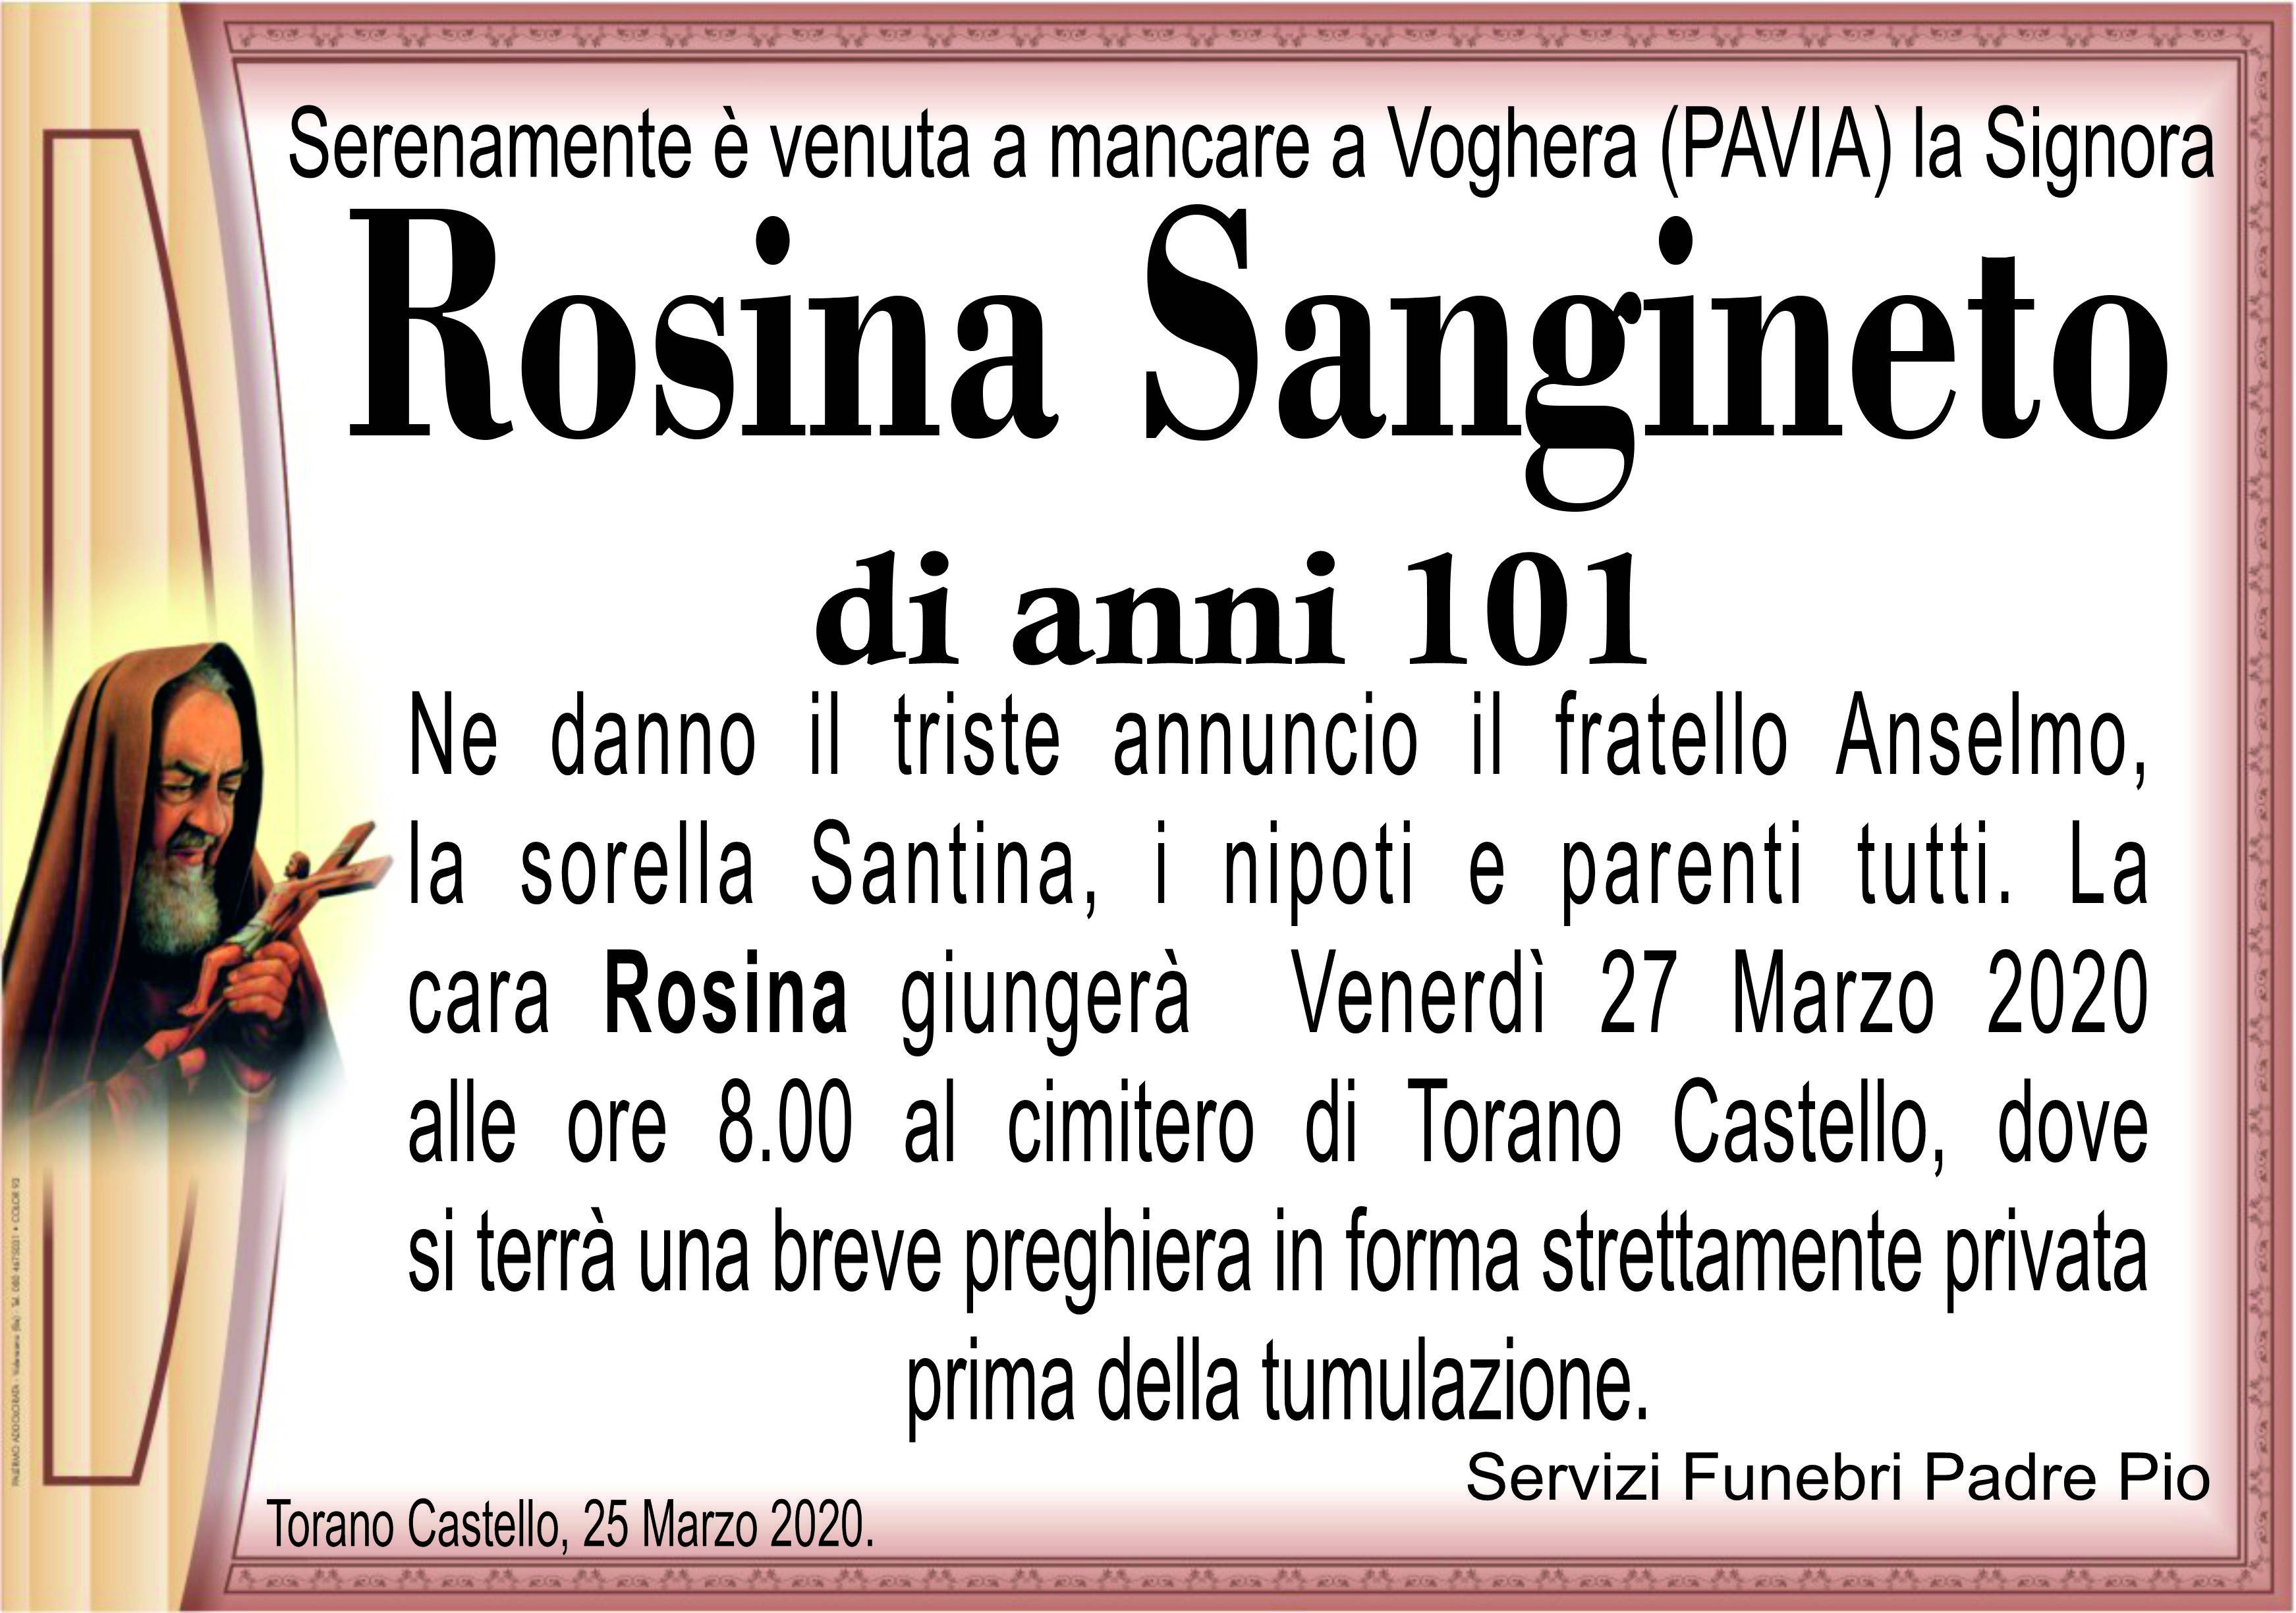 Rosina Sangineto